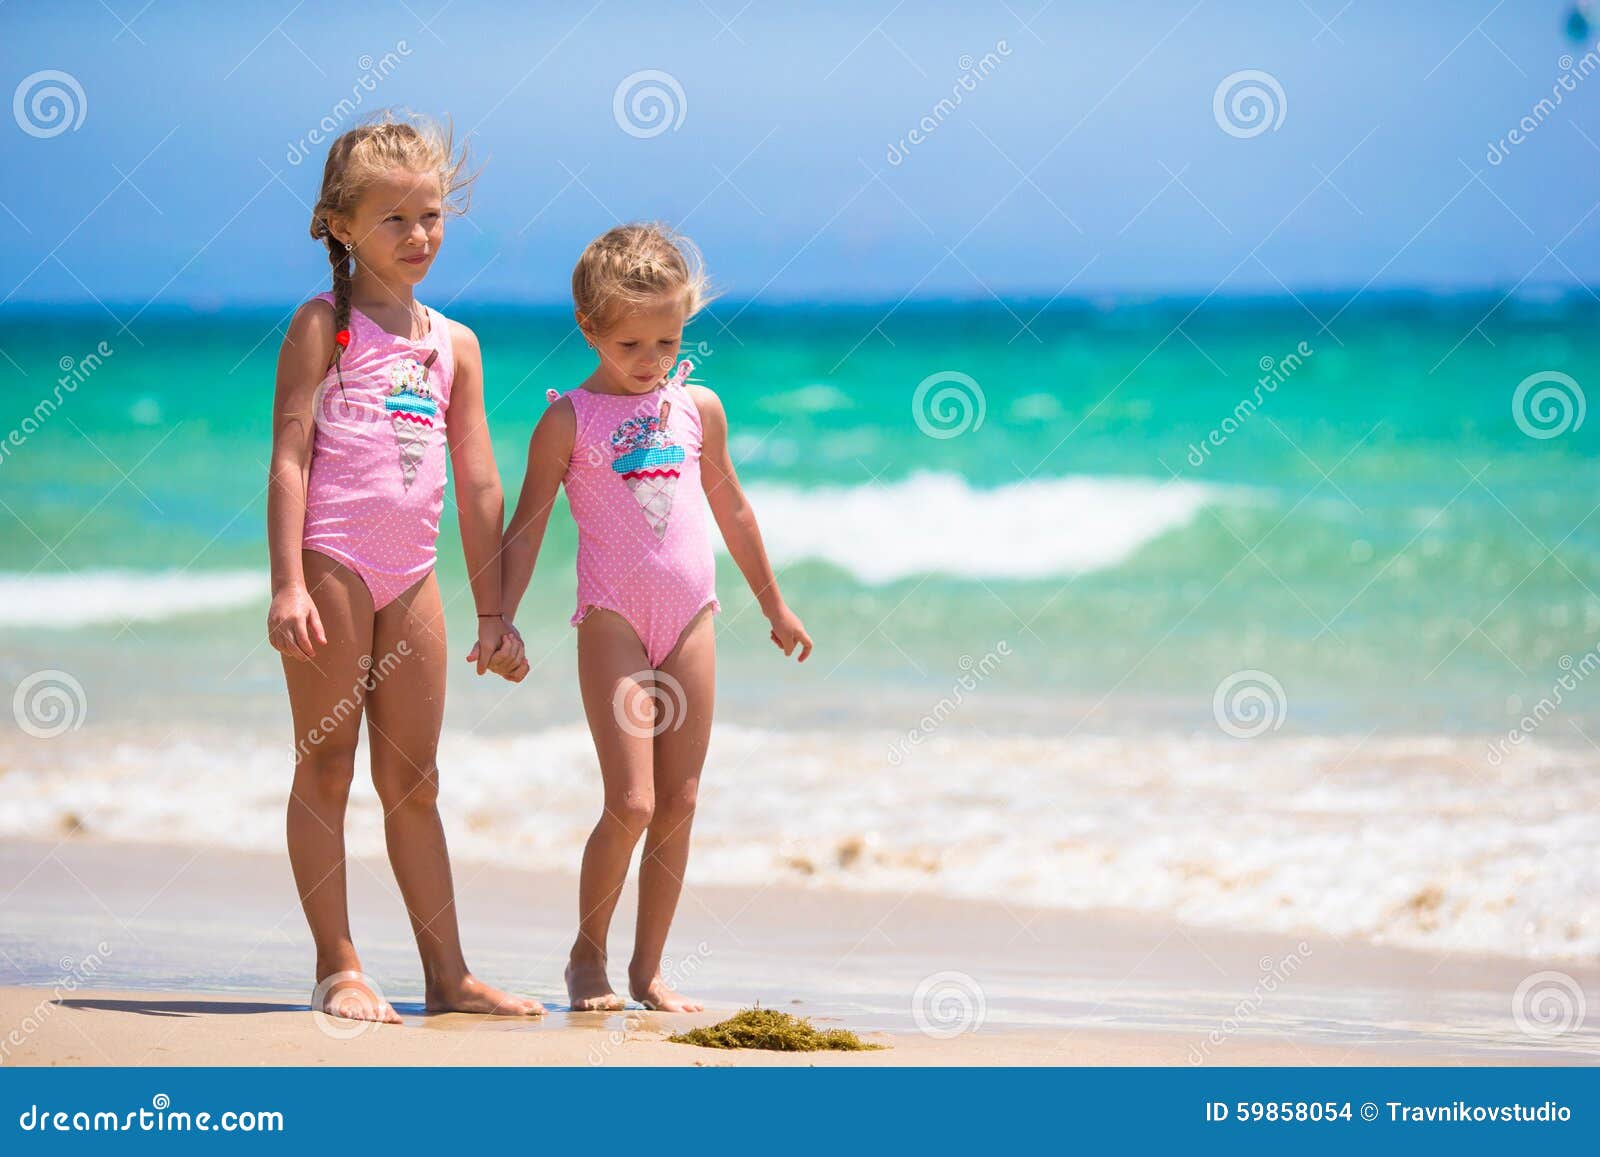 с детьми голым на пляж фото 112